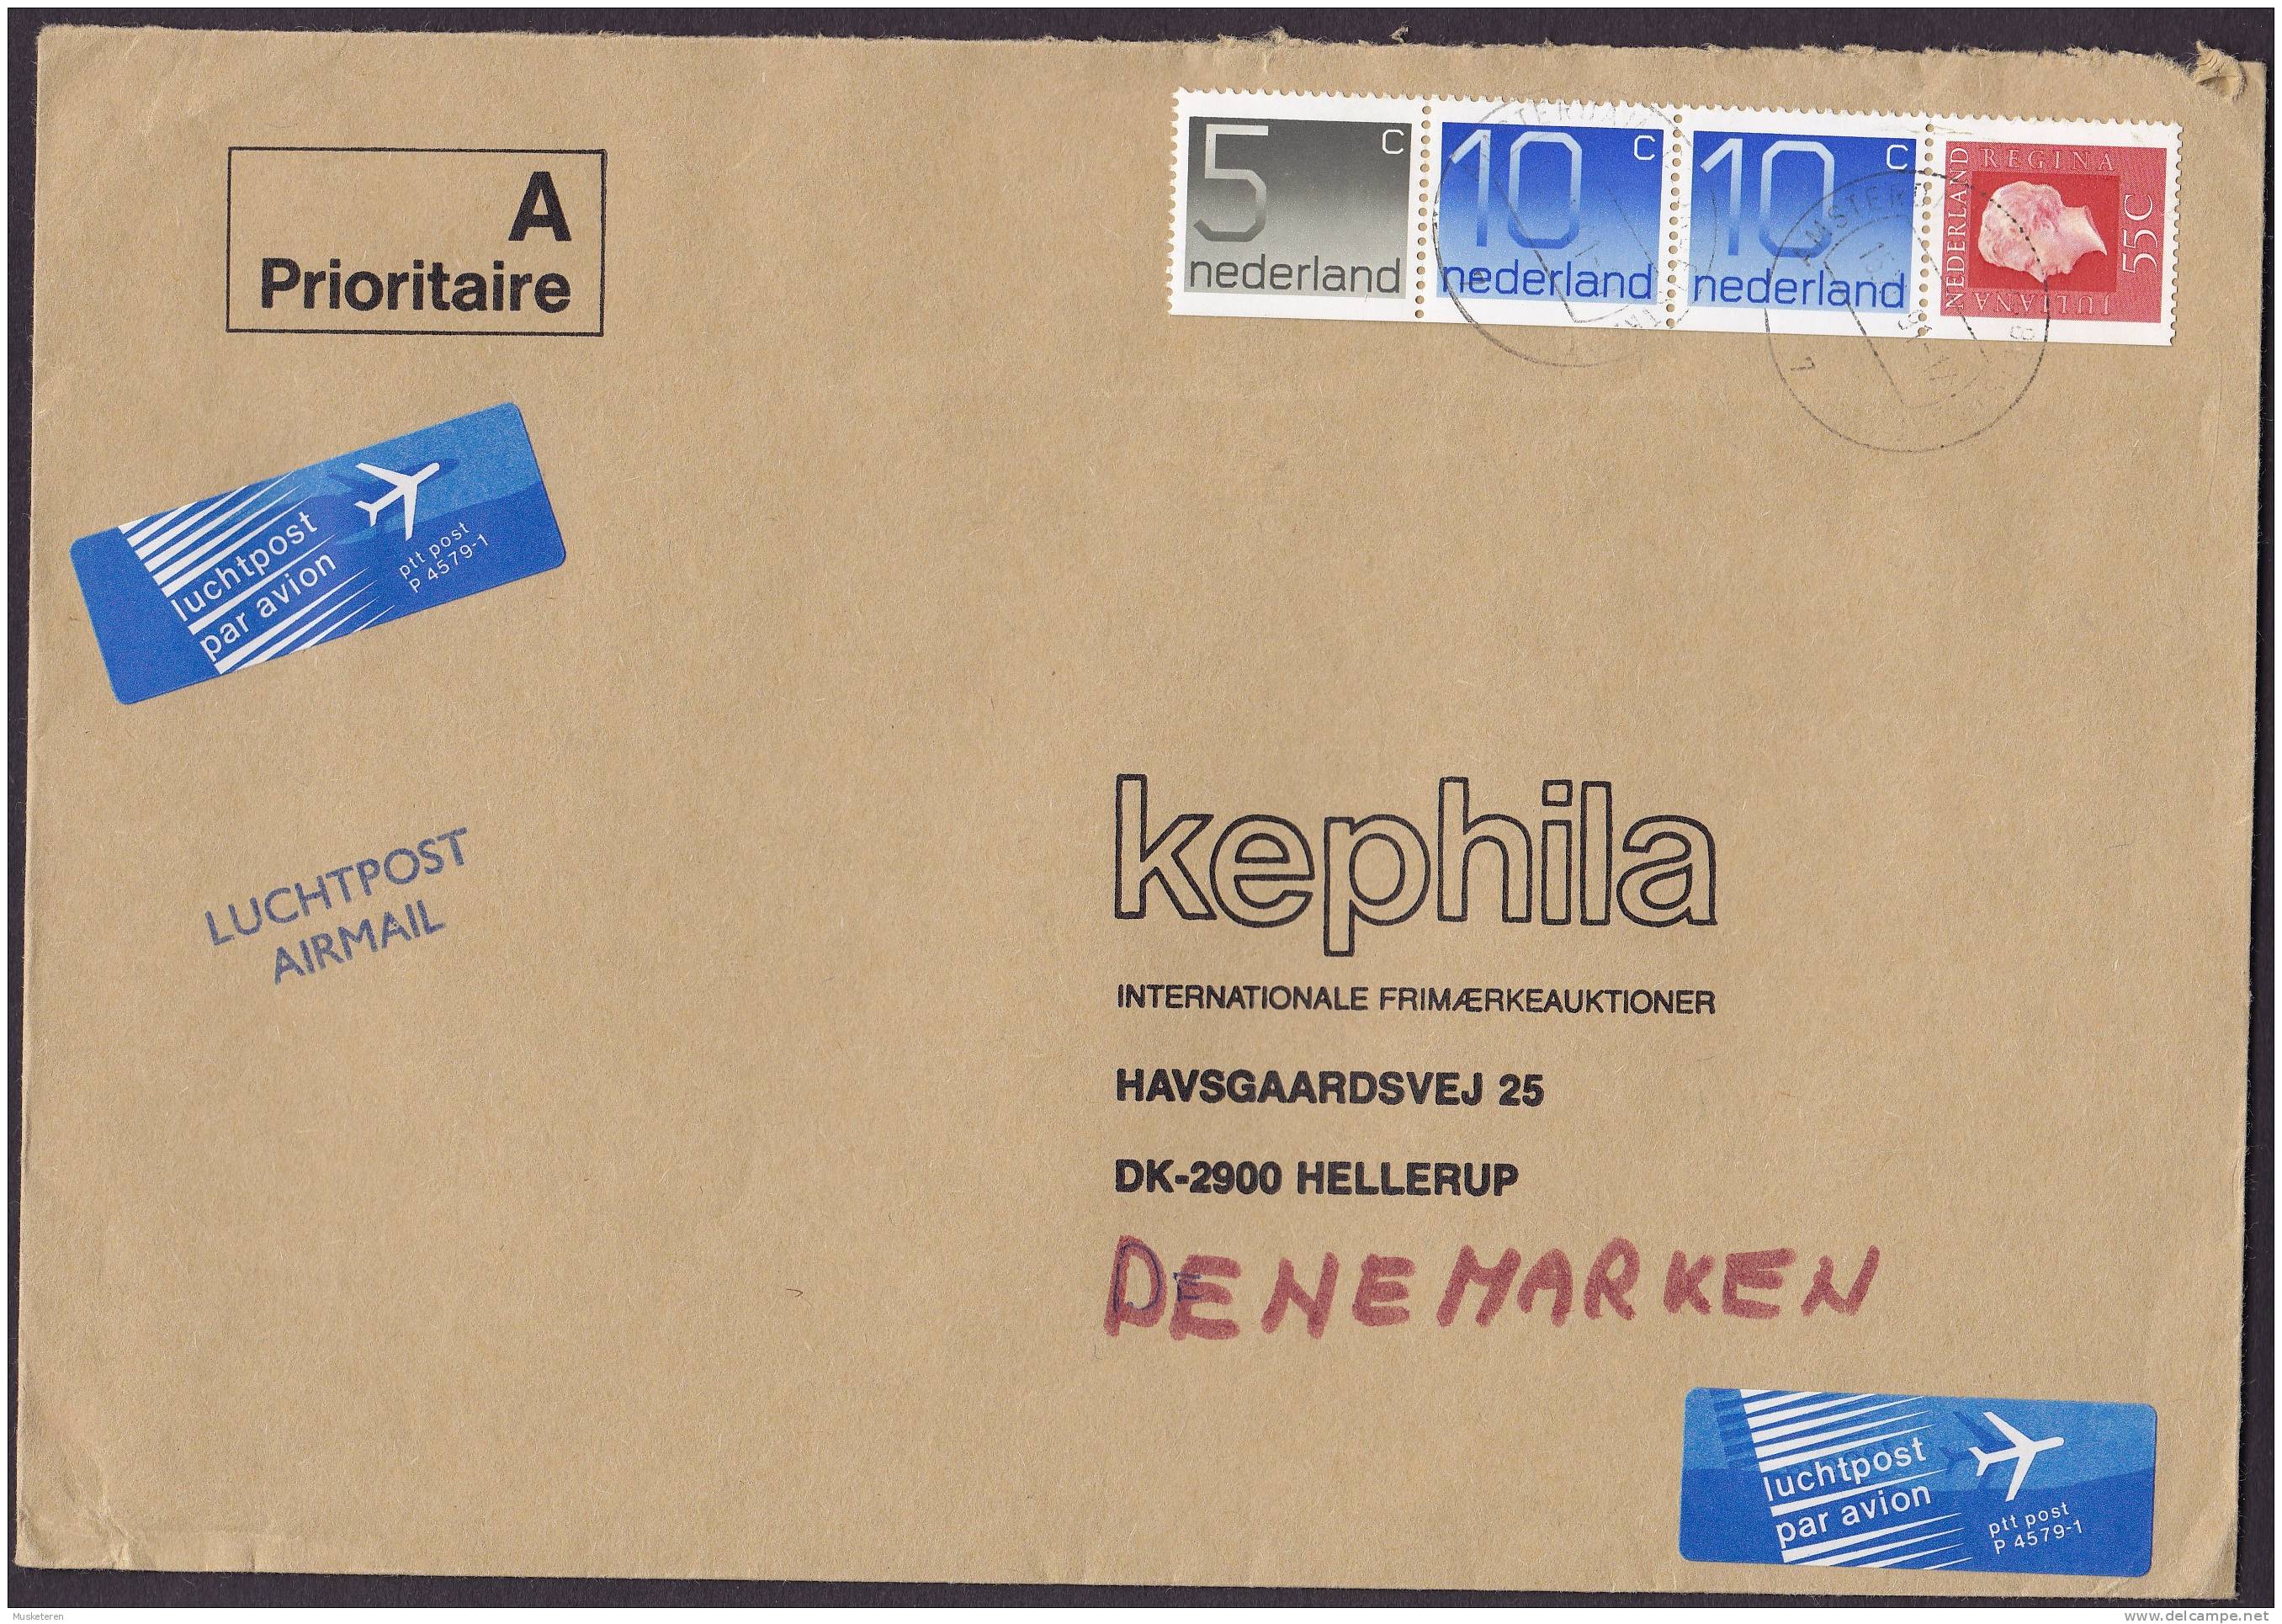 Netherlands A Prioritaire Luchtpost Airmail Par Avion Label 1991 Cover HELLERUP Denmark Booklet Markenheftchen Stripe !! - Posta Aerea